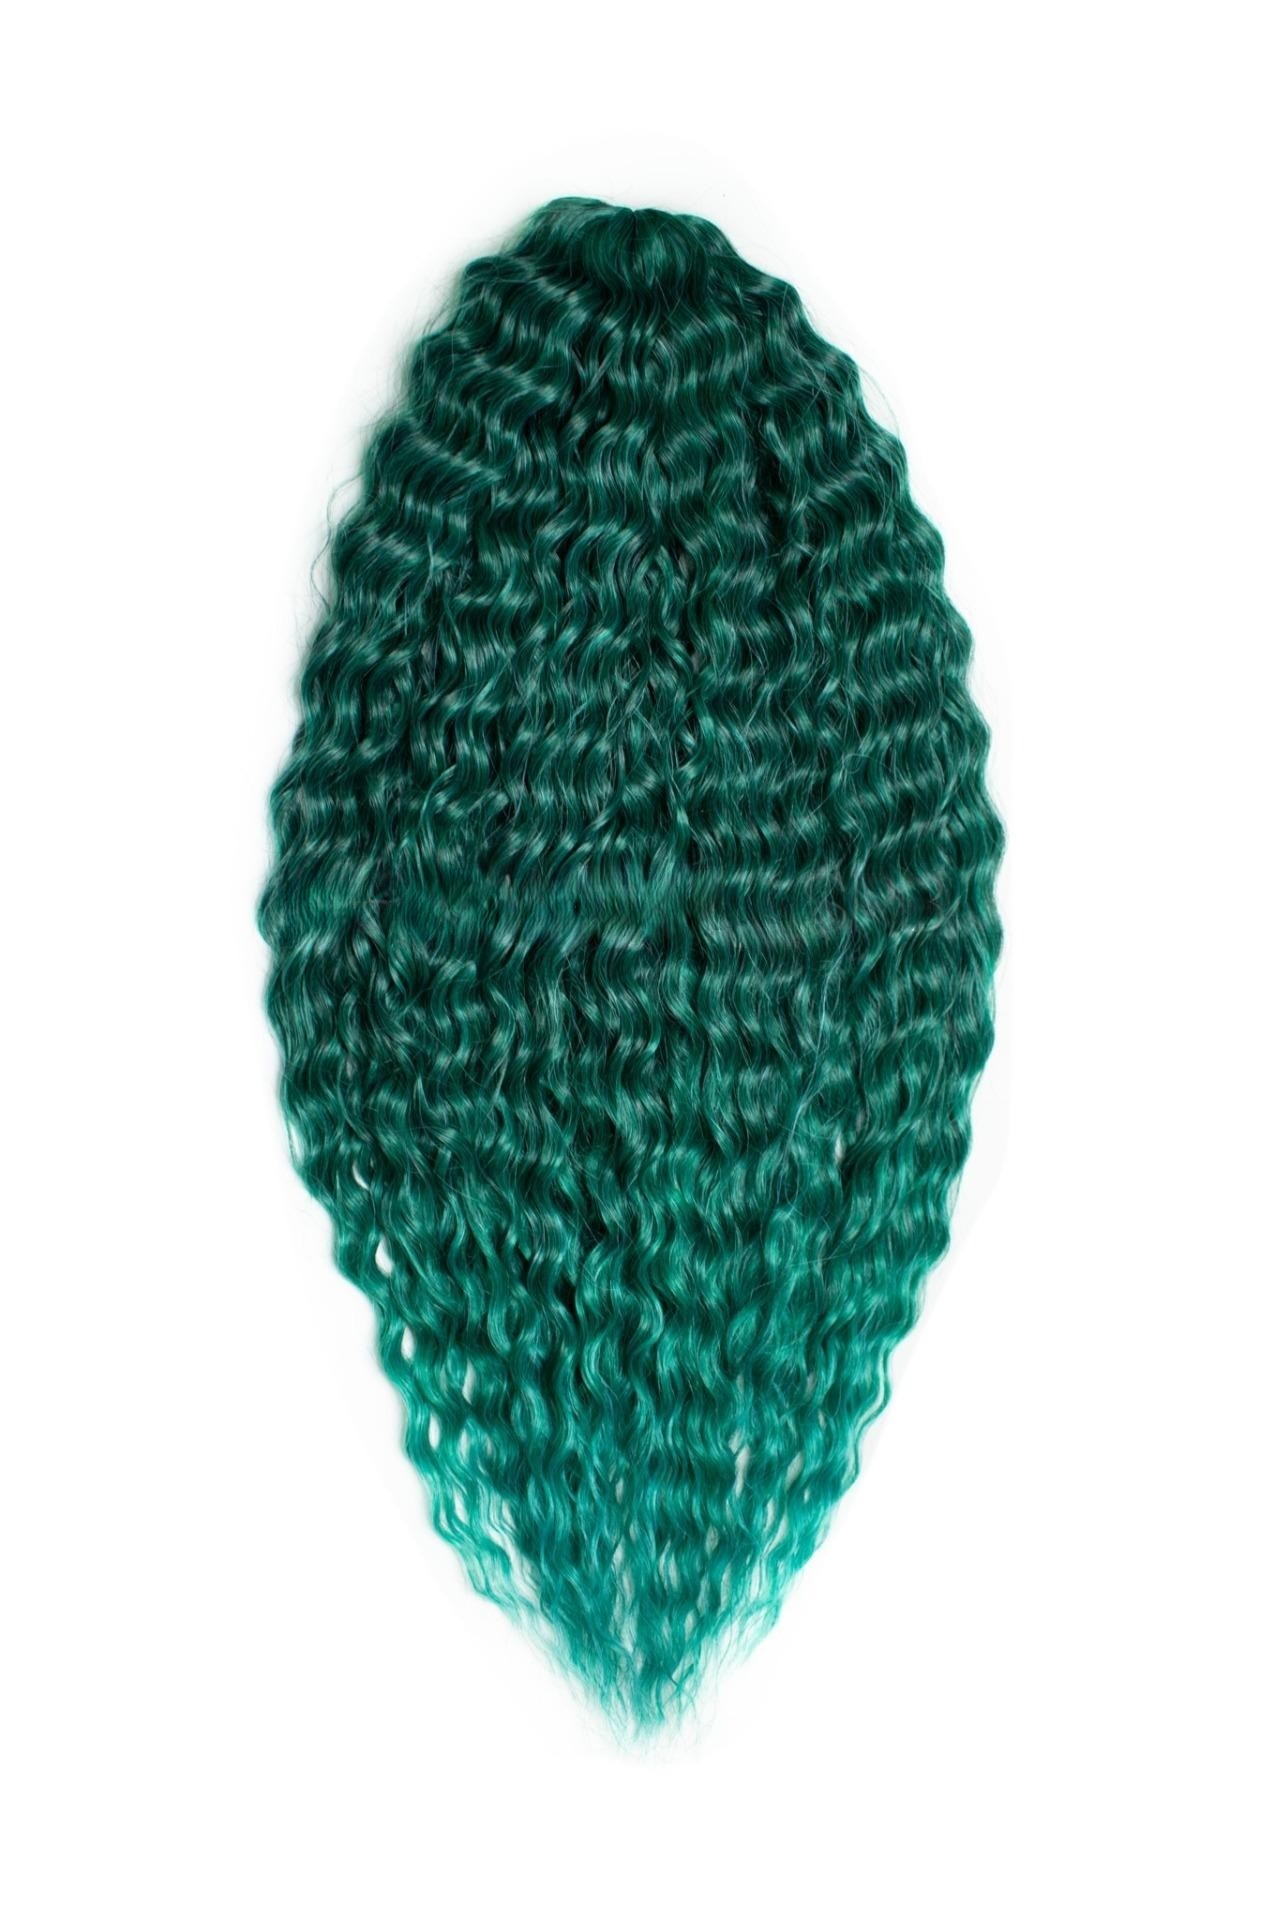 Афрокудри для плетения волос Ariel Ариэль цвет EMERALD зеленый длина 66см вес 300г афрокудри для плетения волос ariel ариэль blue 7 длина 66см вес 300г